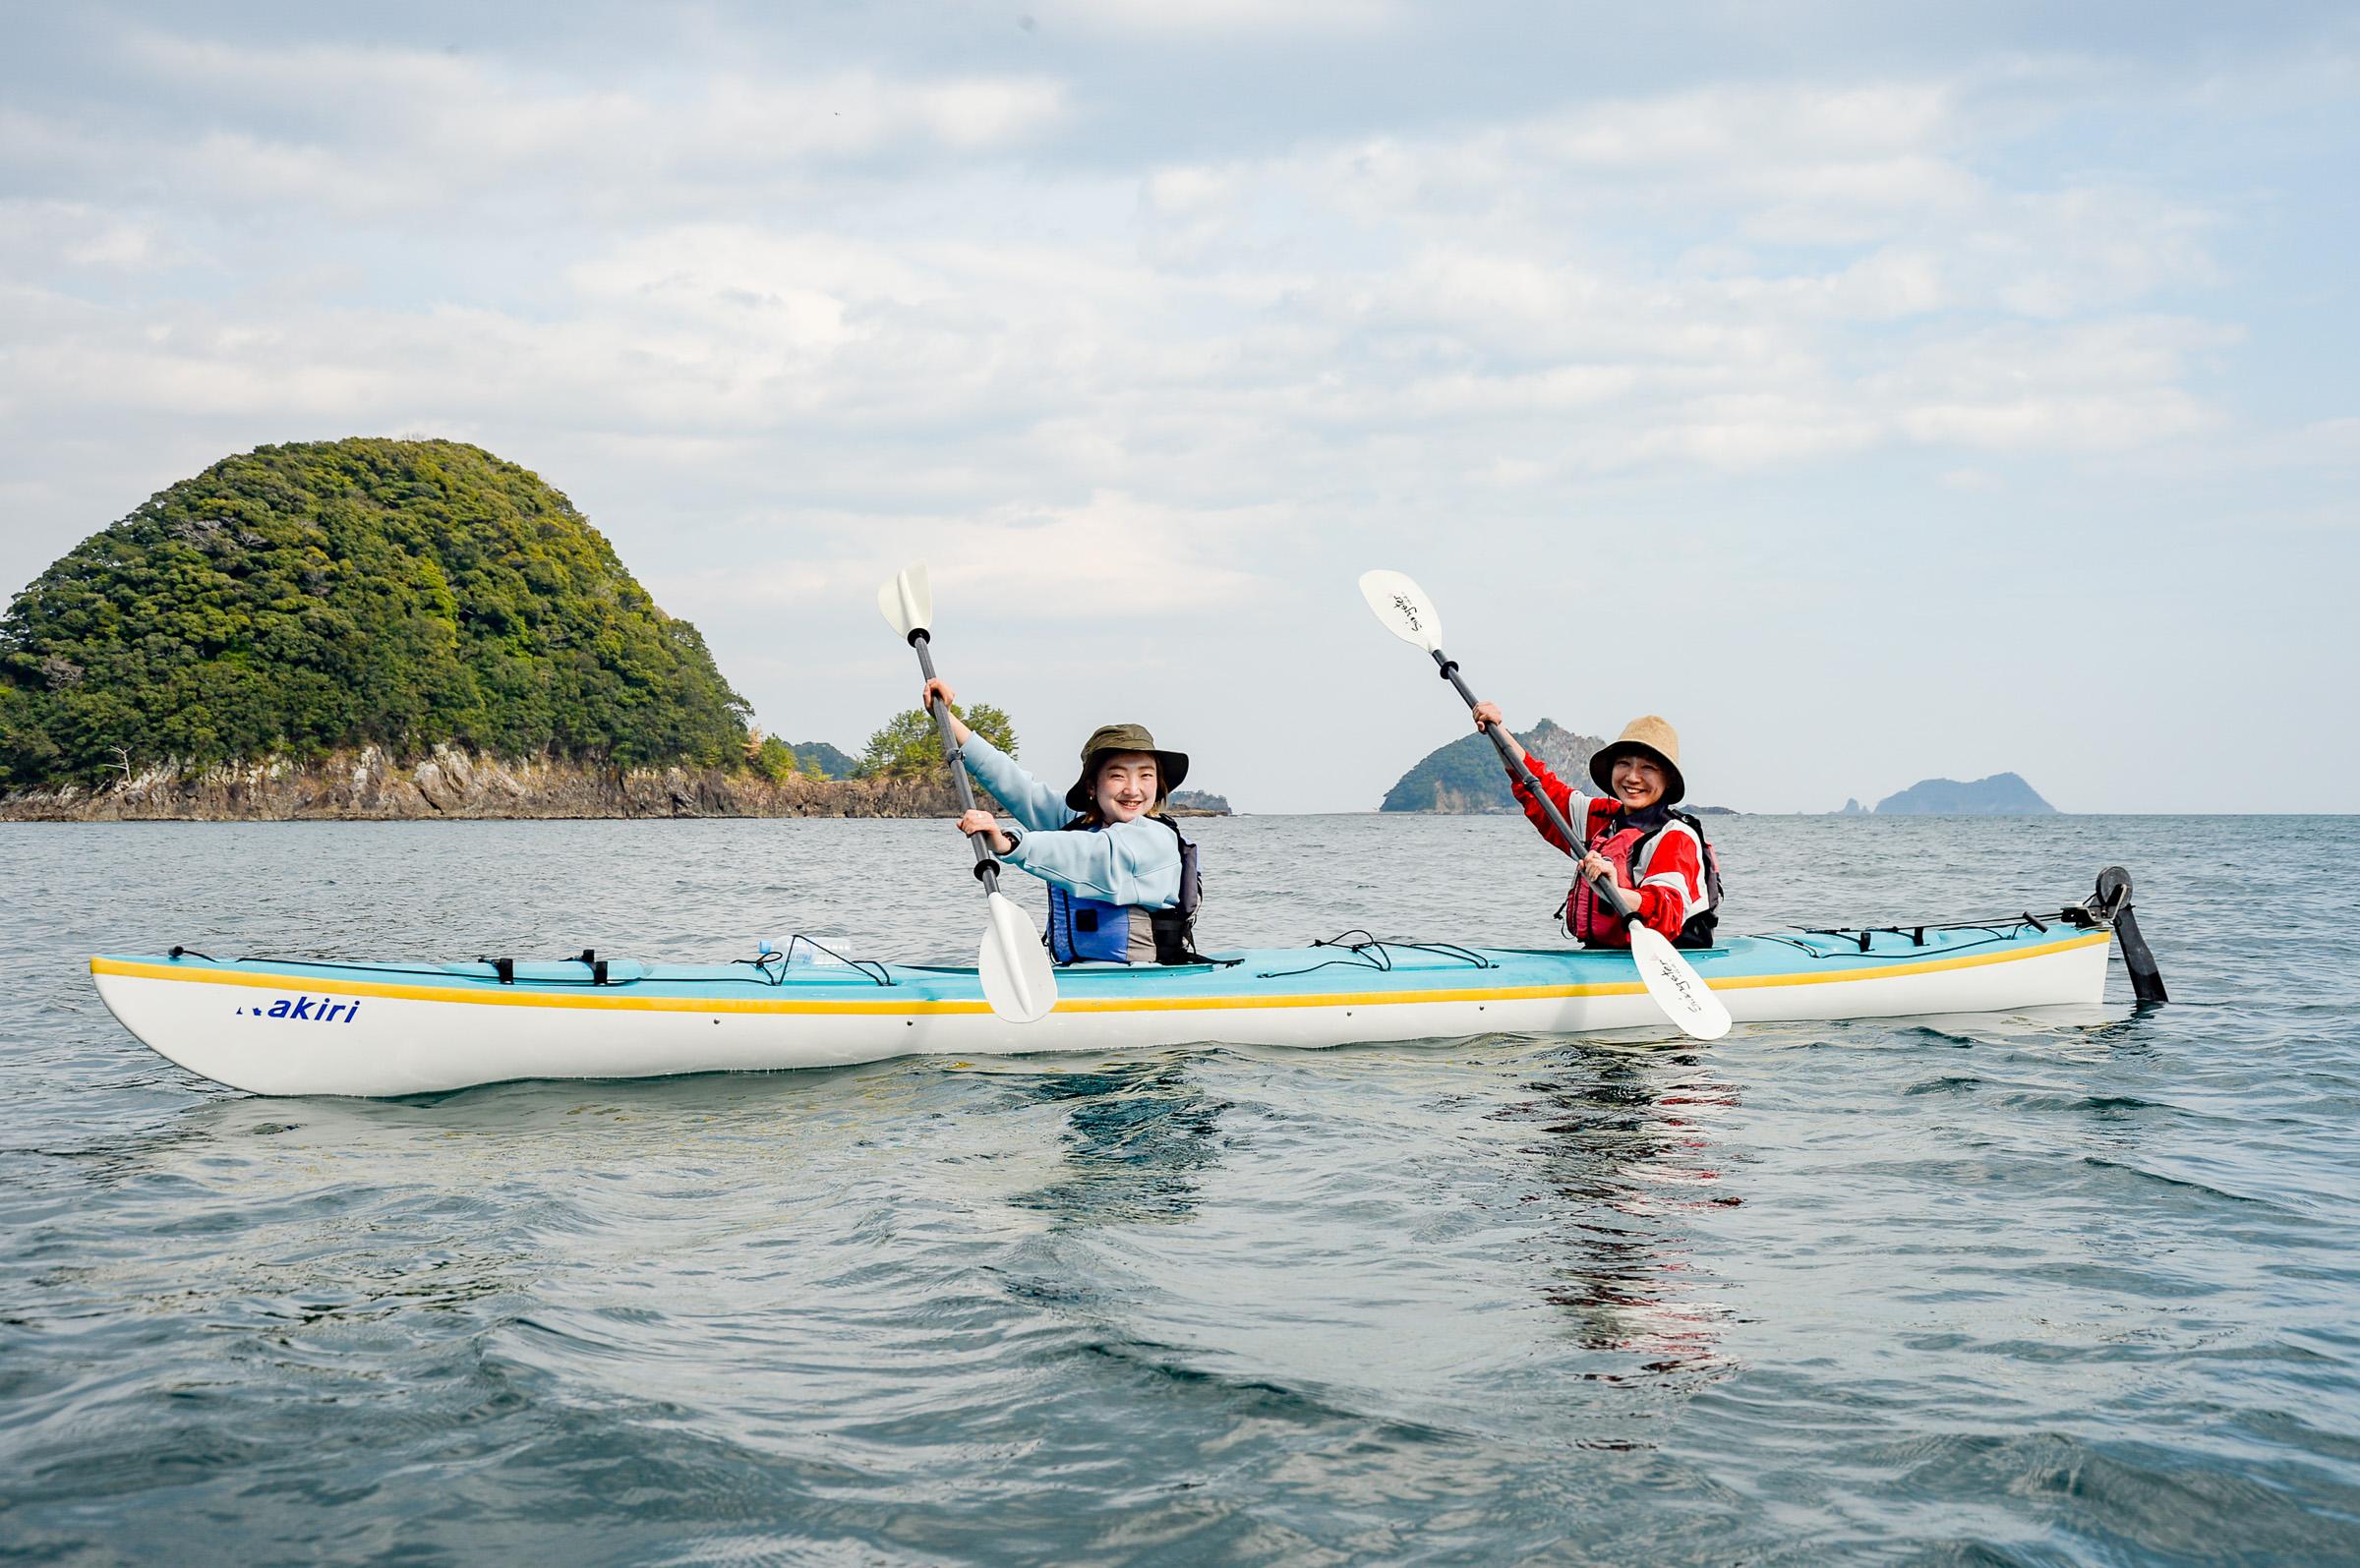 키호쿠 정（KihokuTown）의 Kiaora Paddle(키오라 패들)에서 카약이나 SUP를 체험! 바다의 활동 체험을 통해 아웃도어의 새로운 즐기는 방법을 발견할 수 버립니다!